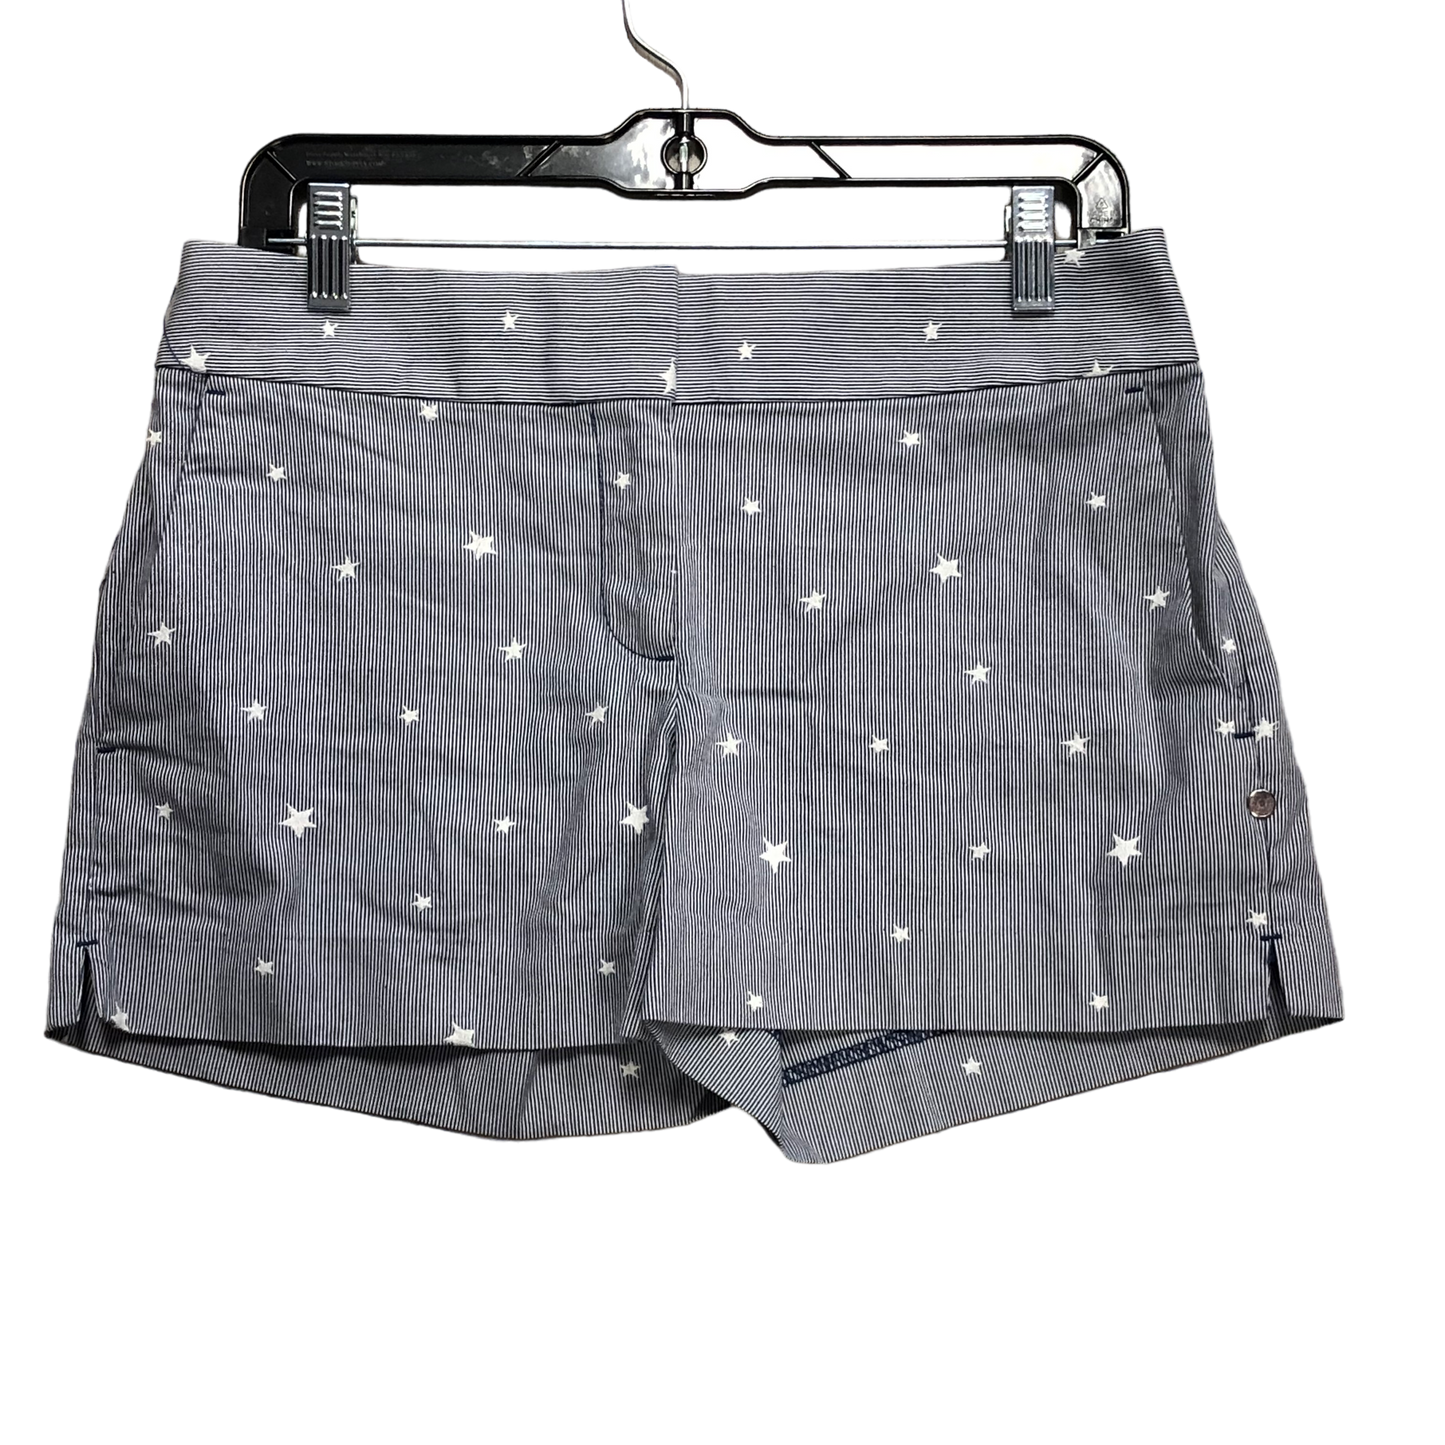 Shorts By Loft  Size: 0